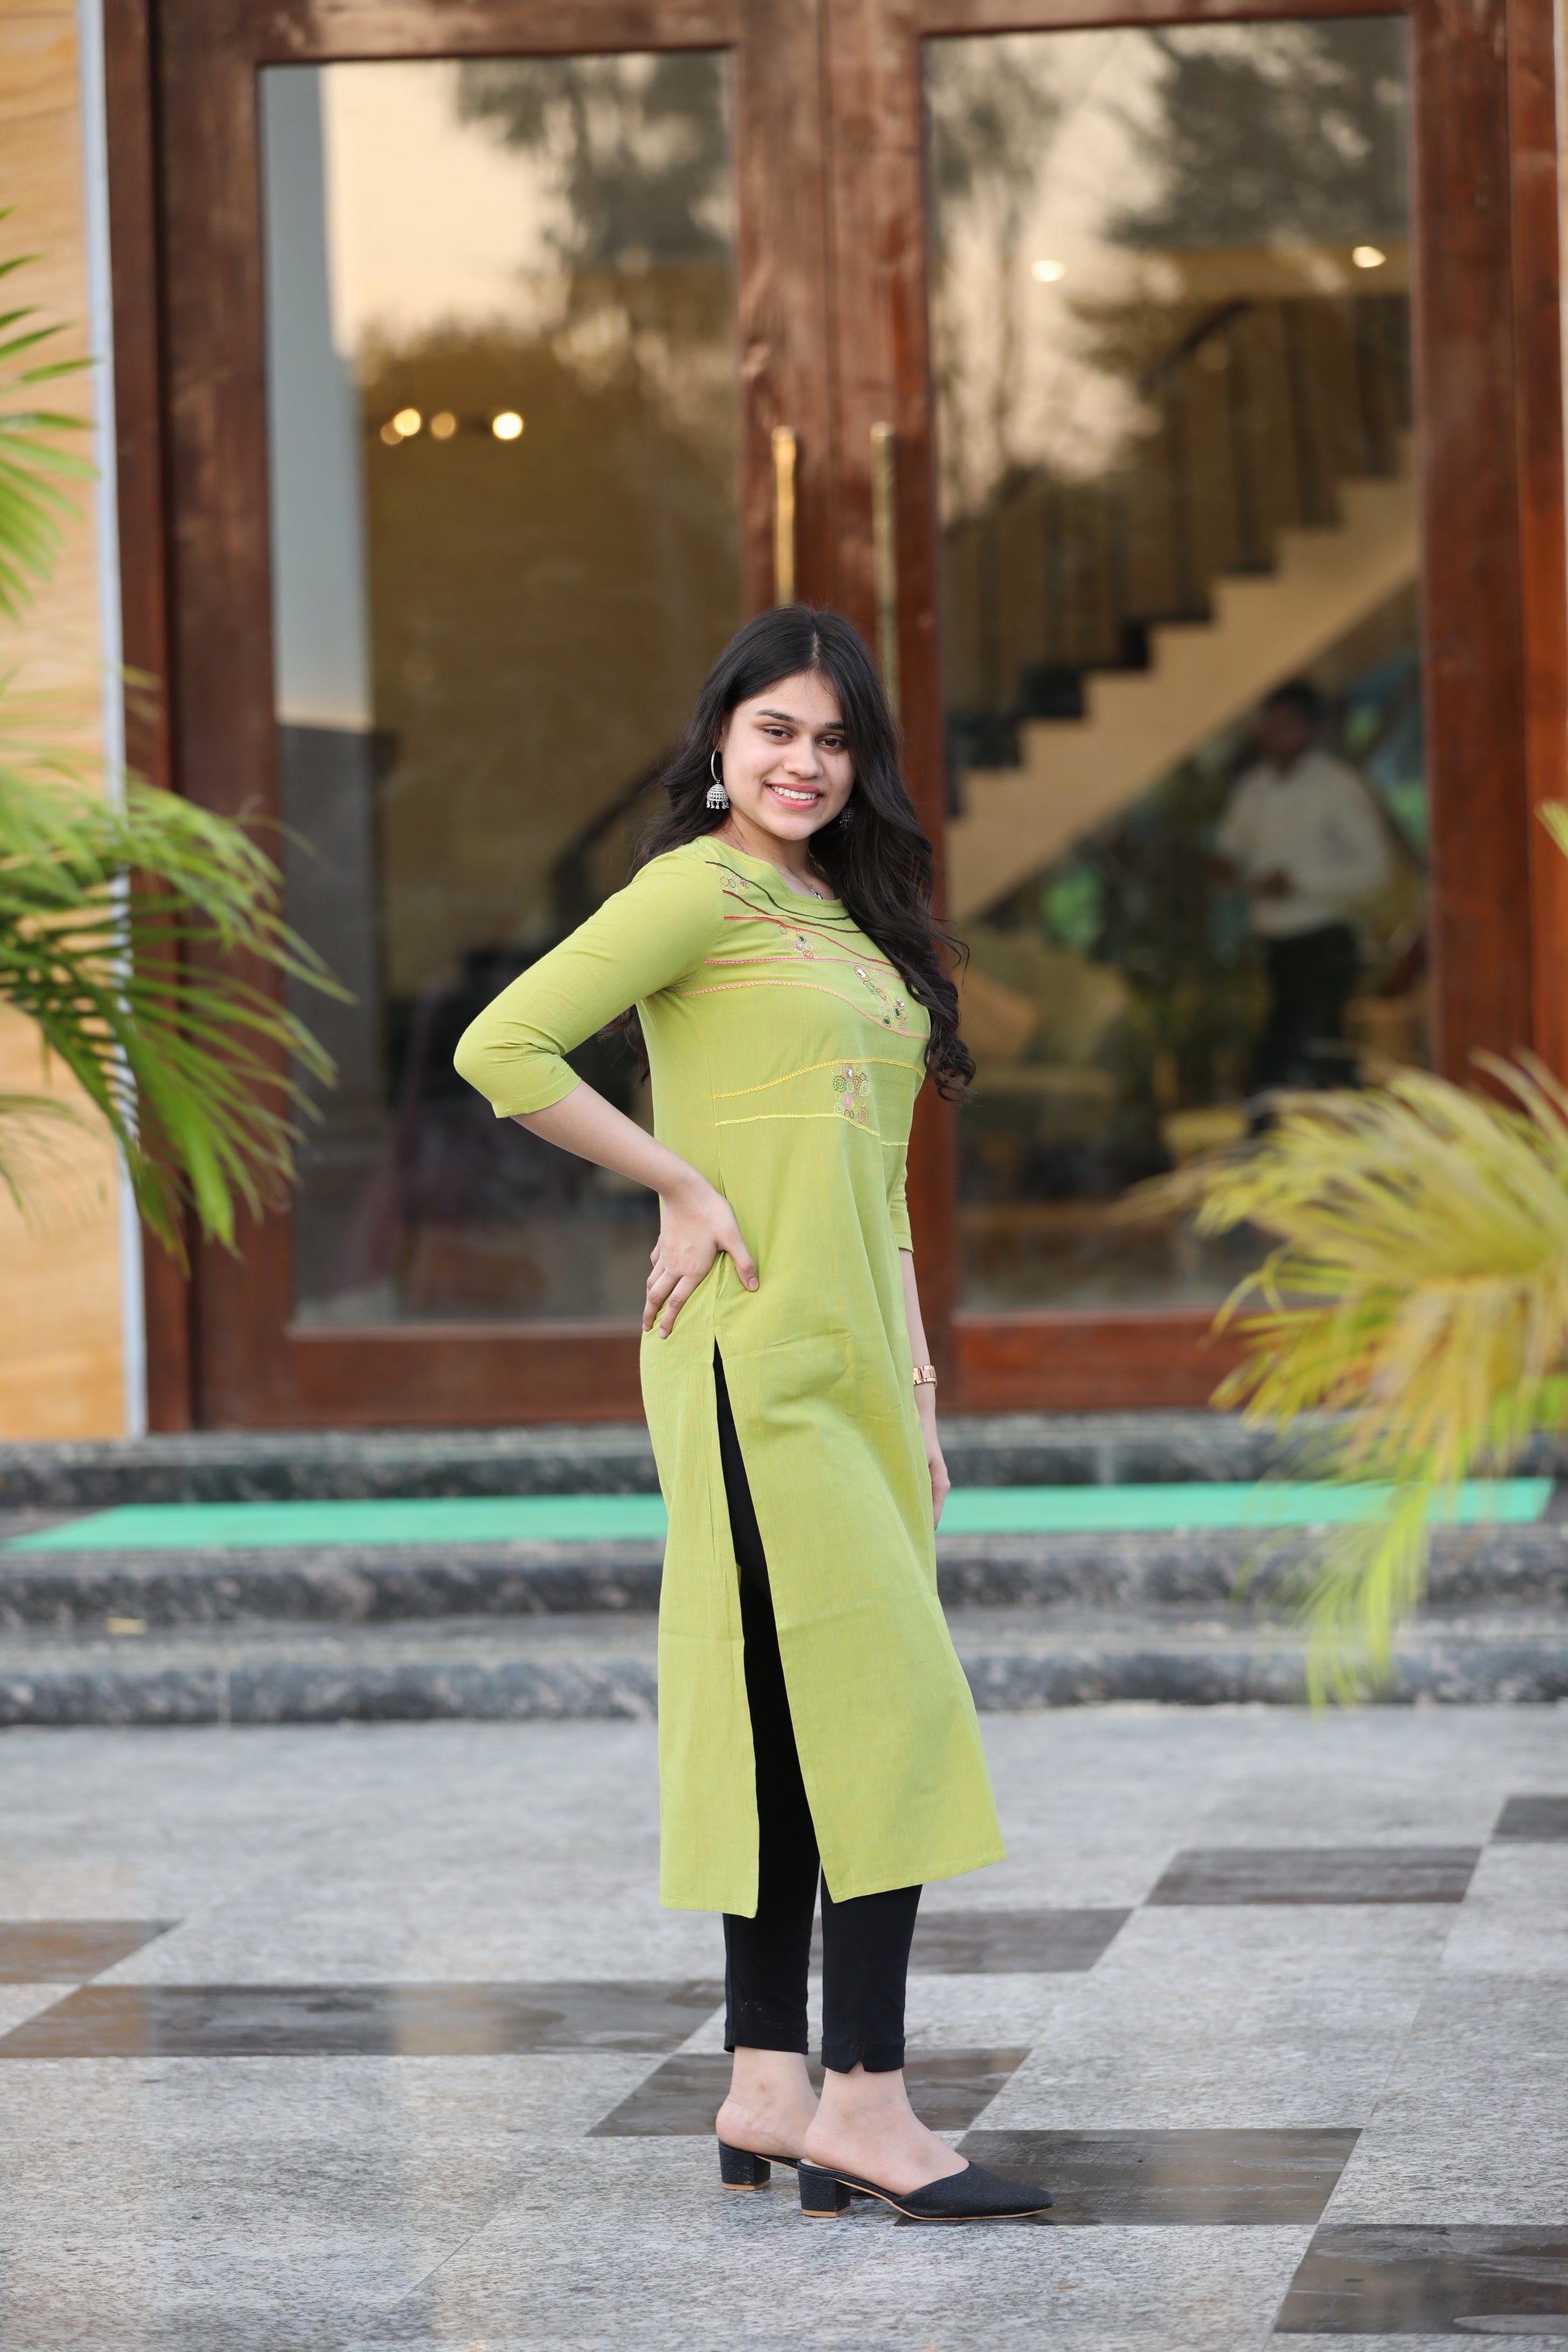 Buy latest green organza dupatta designs for women | Priya Chaudhary